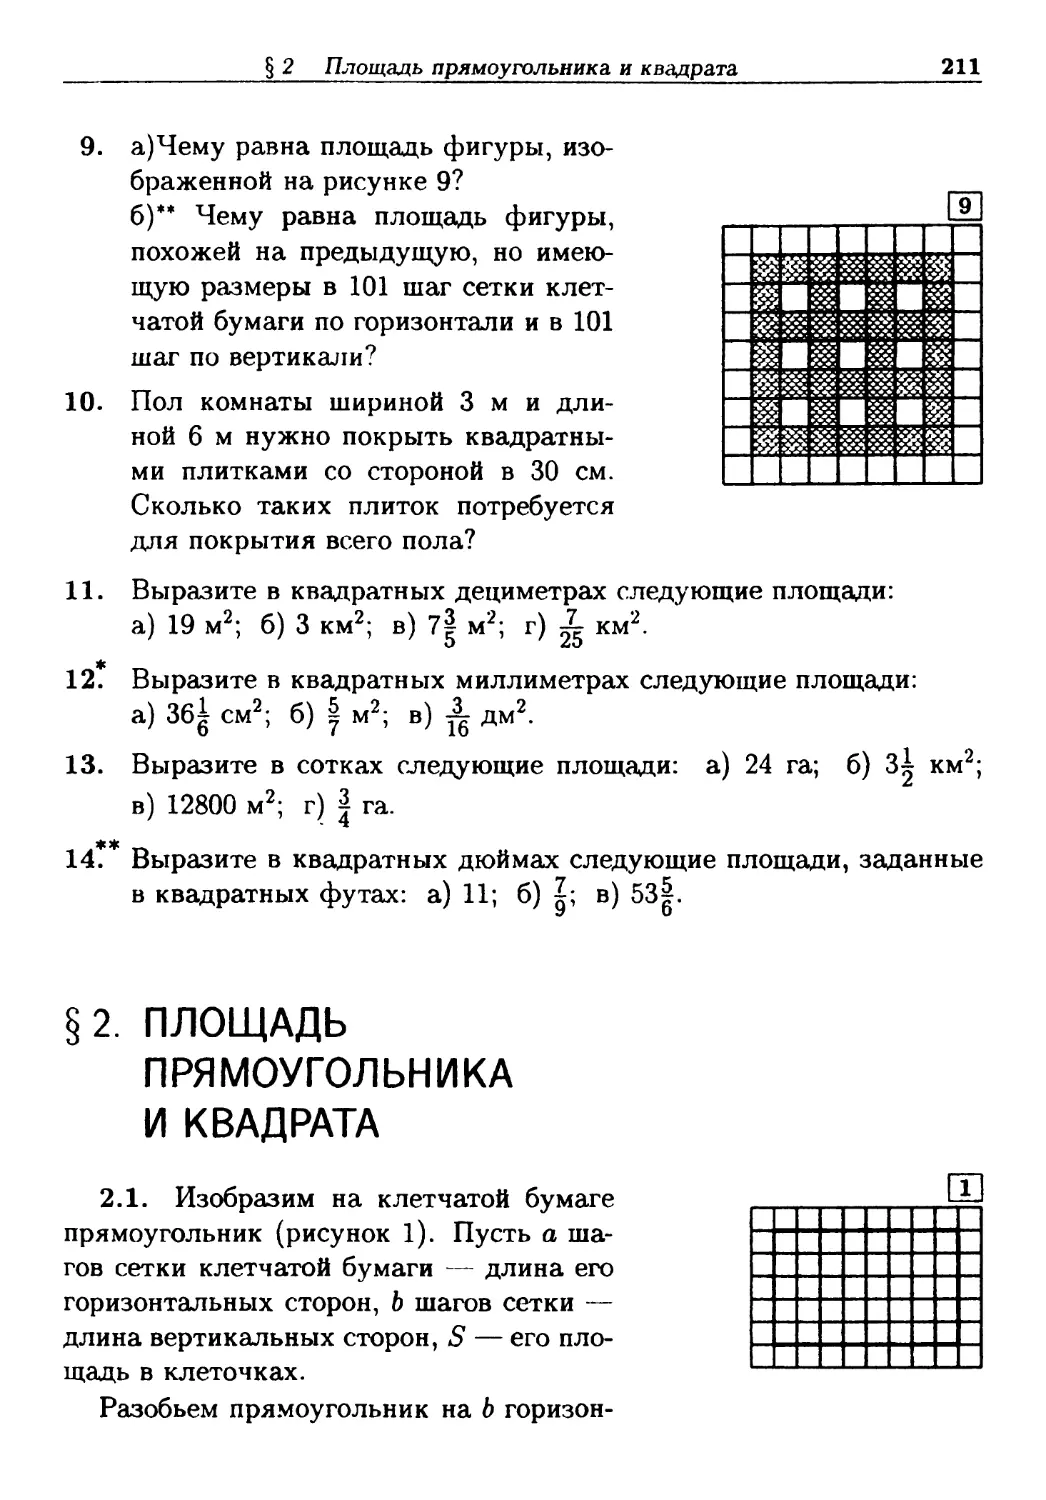 §2. Площадь прямоугольника и квадрата